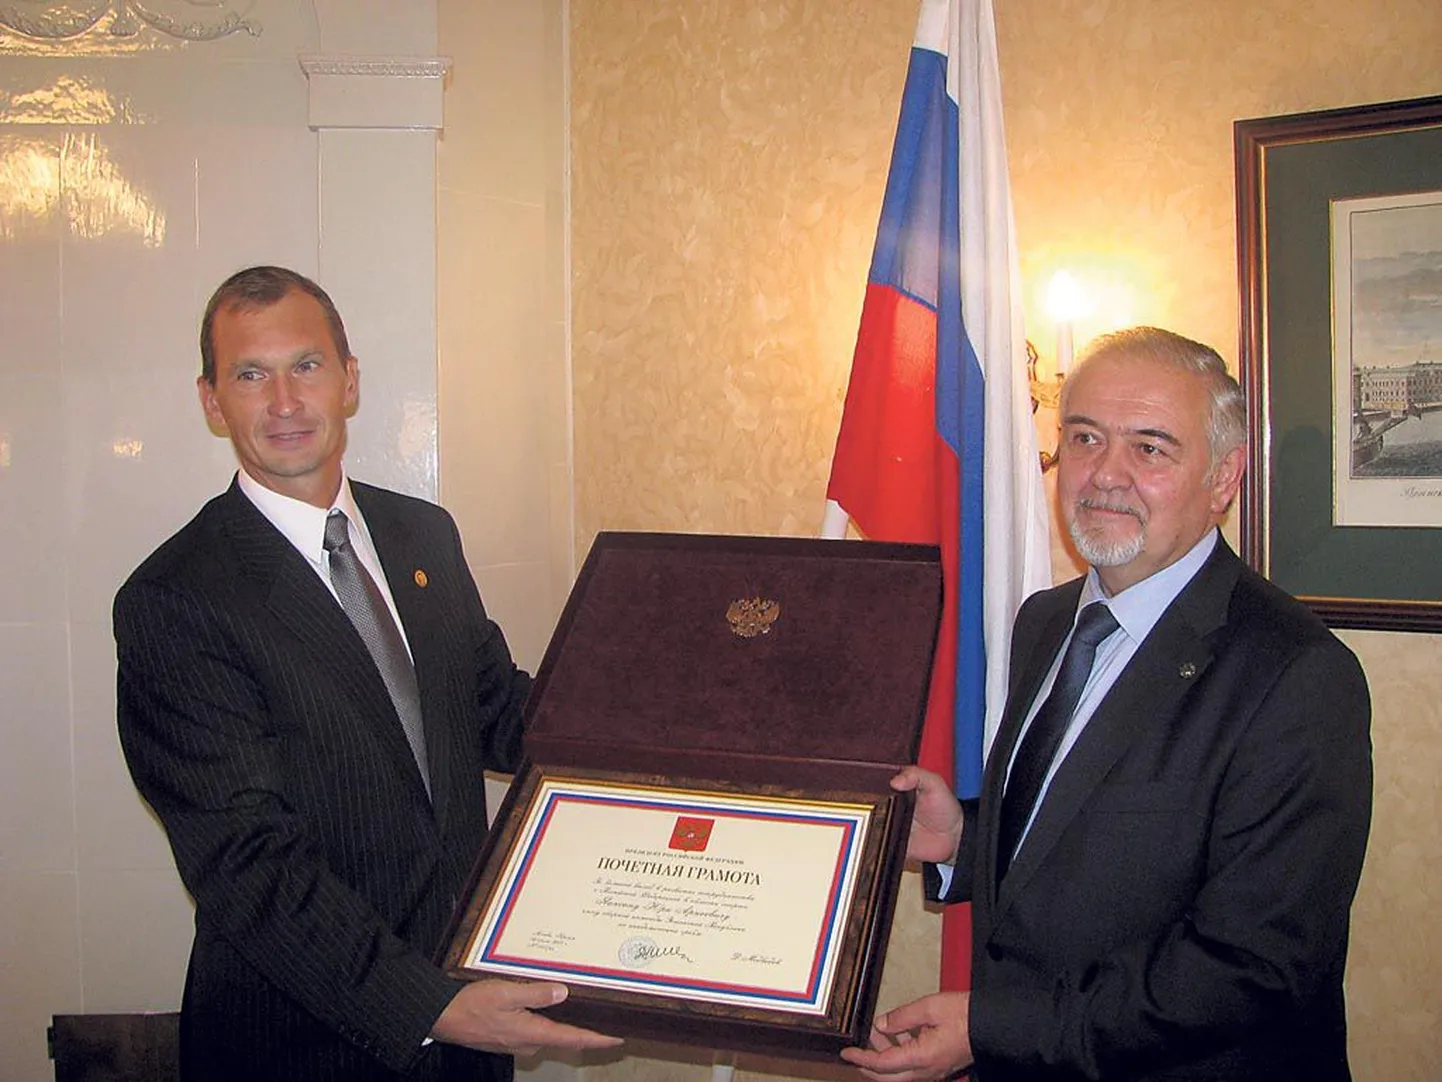 Sõudekorüfee Jüri Jaanson (vasakul) ja Venemaa suursaadik Juri Merzljakov presidendi aukirjaga.